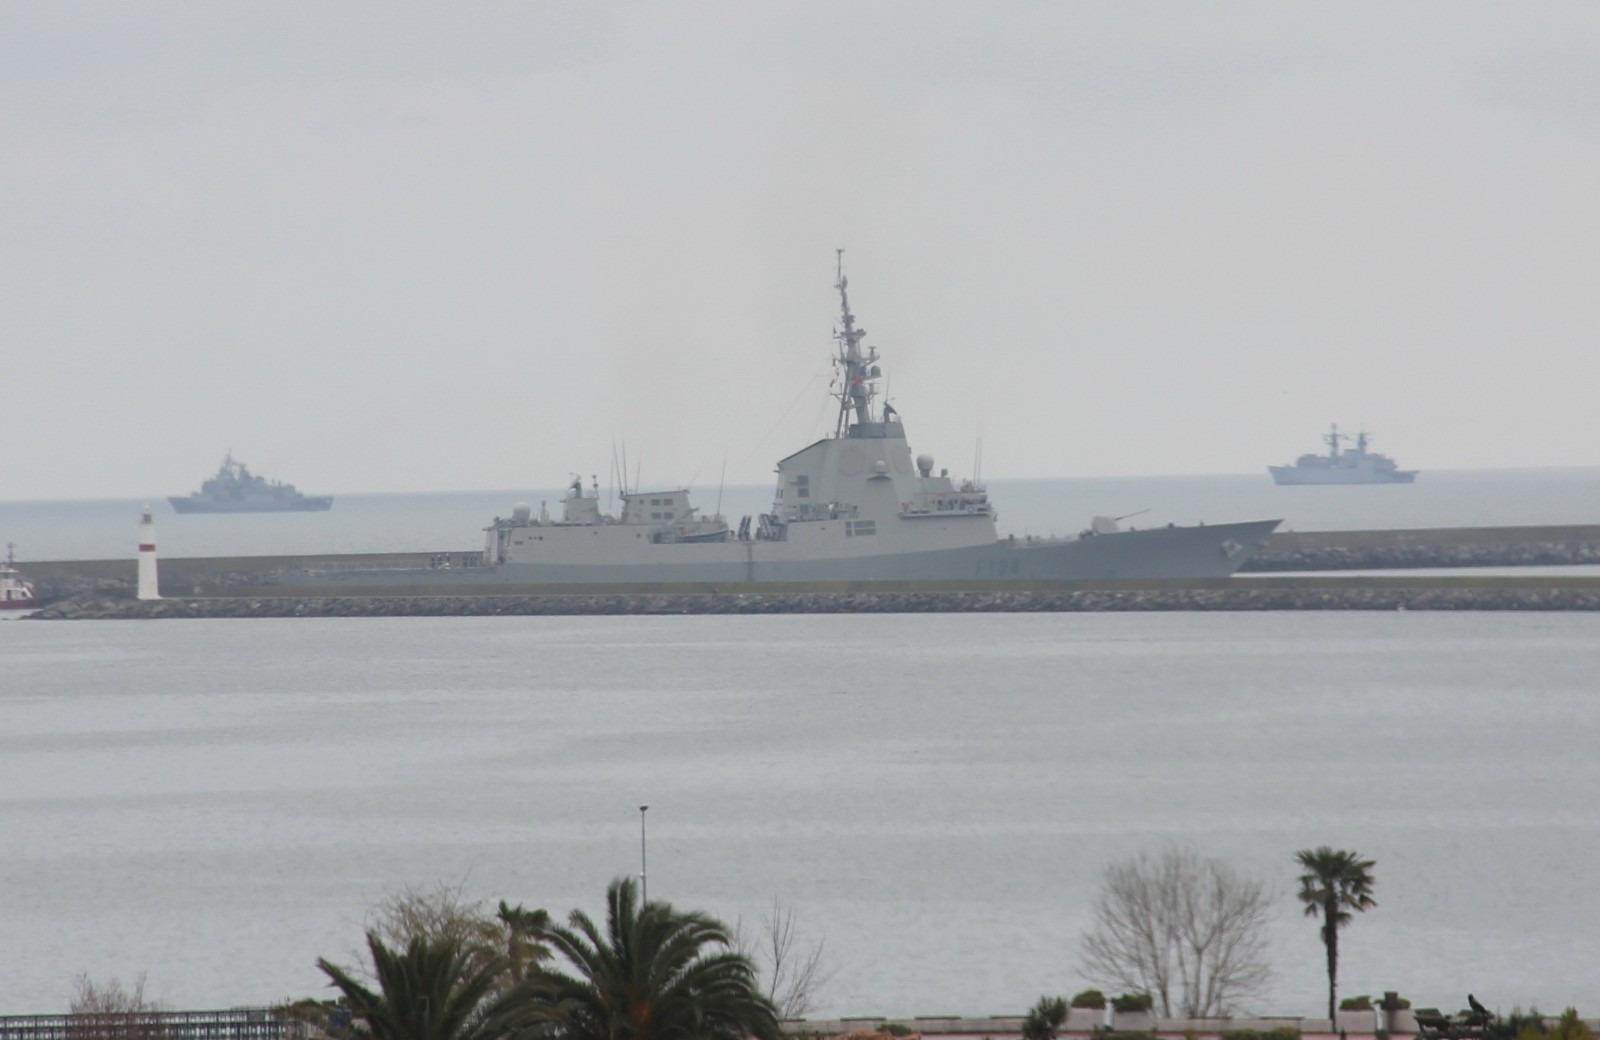 NATO gemileri Samsun'dan ayrıldı
